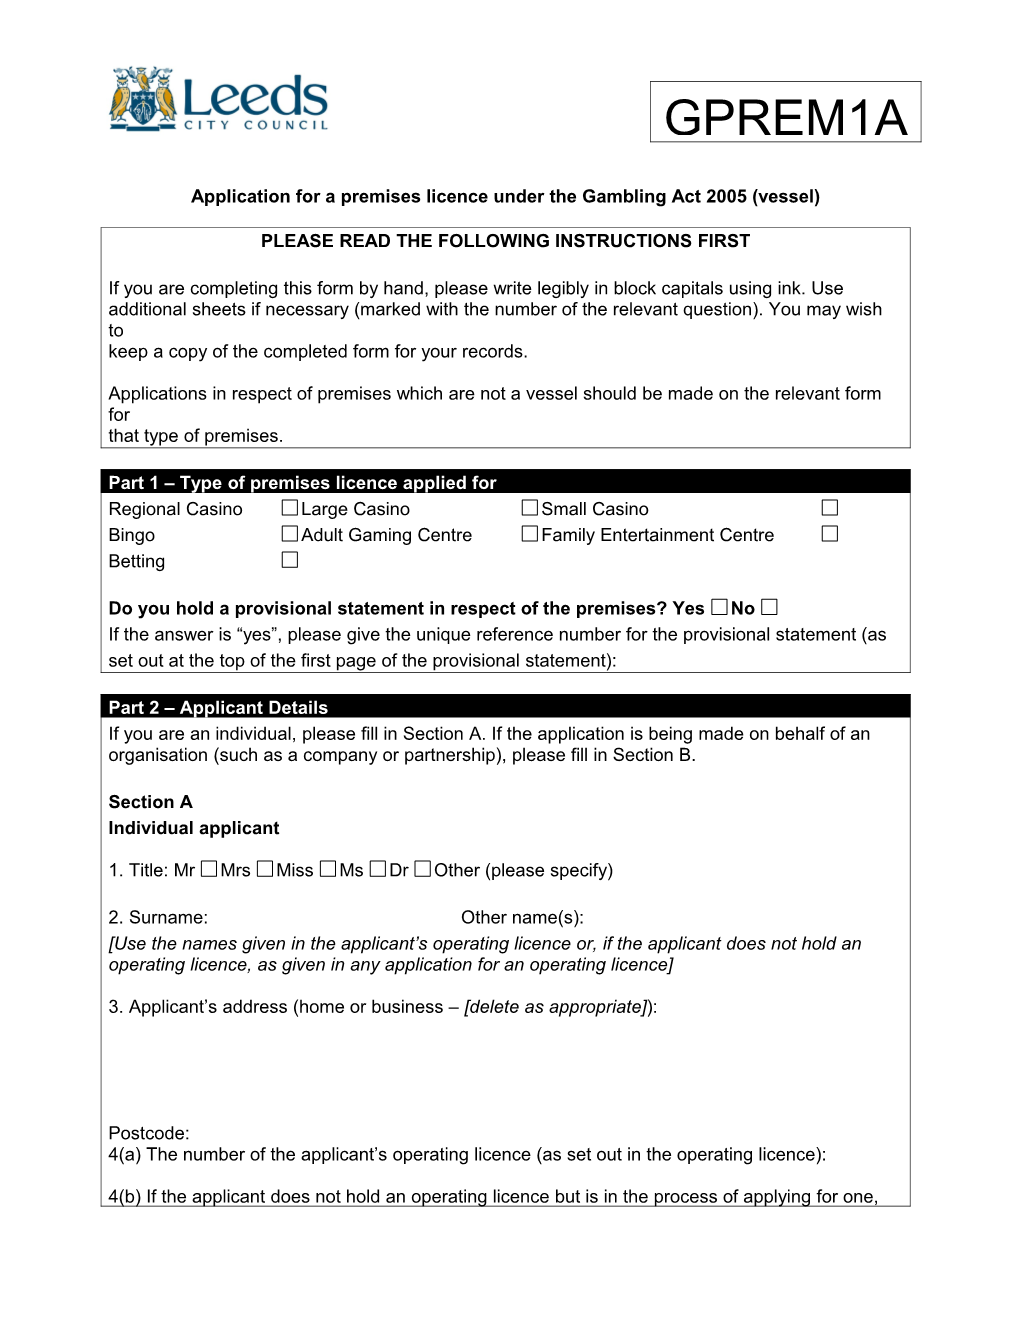 GPREM1A - Application Form for a New Premises Licence - Vessel